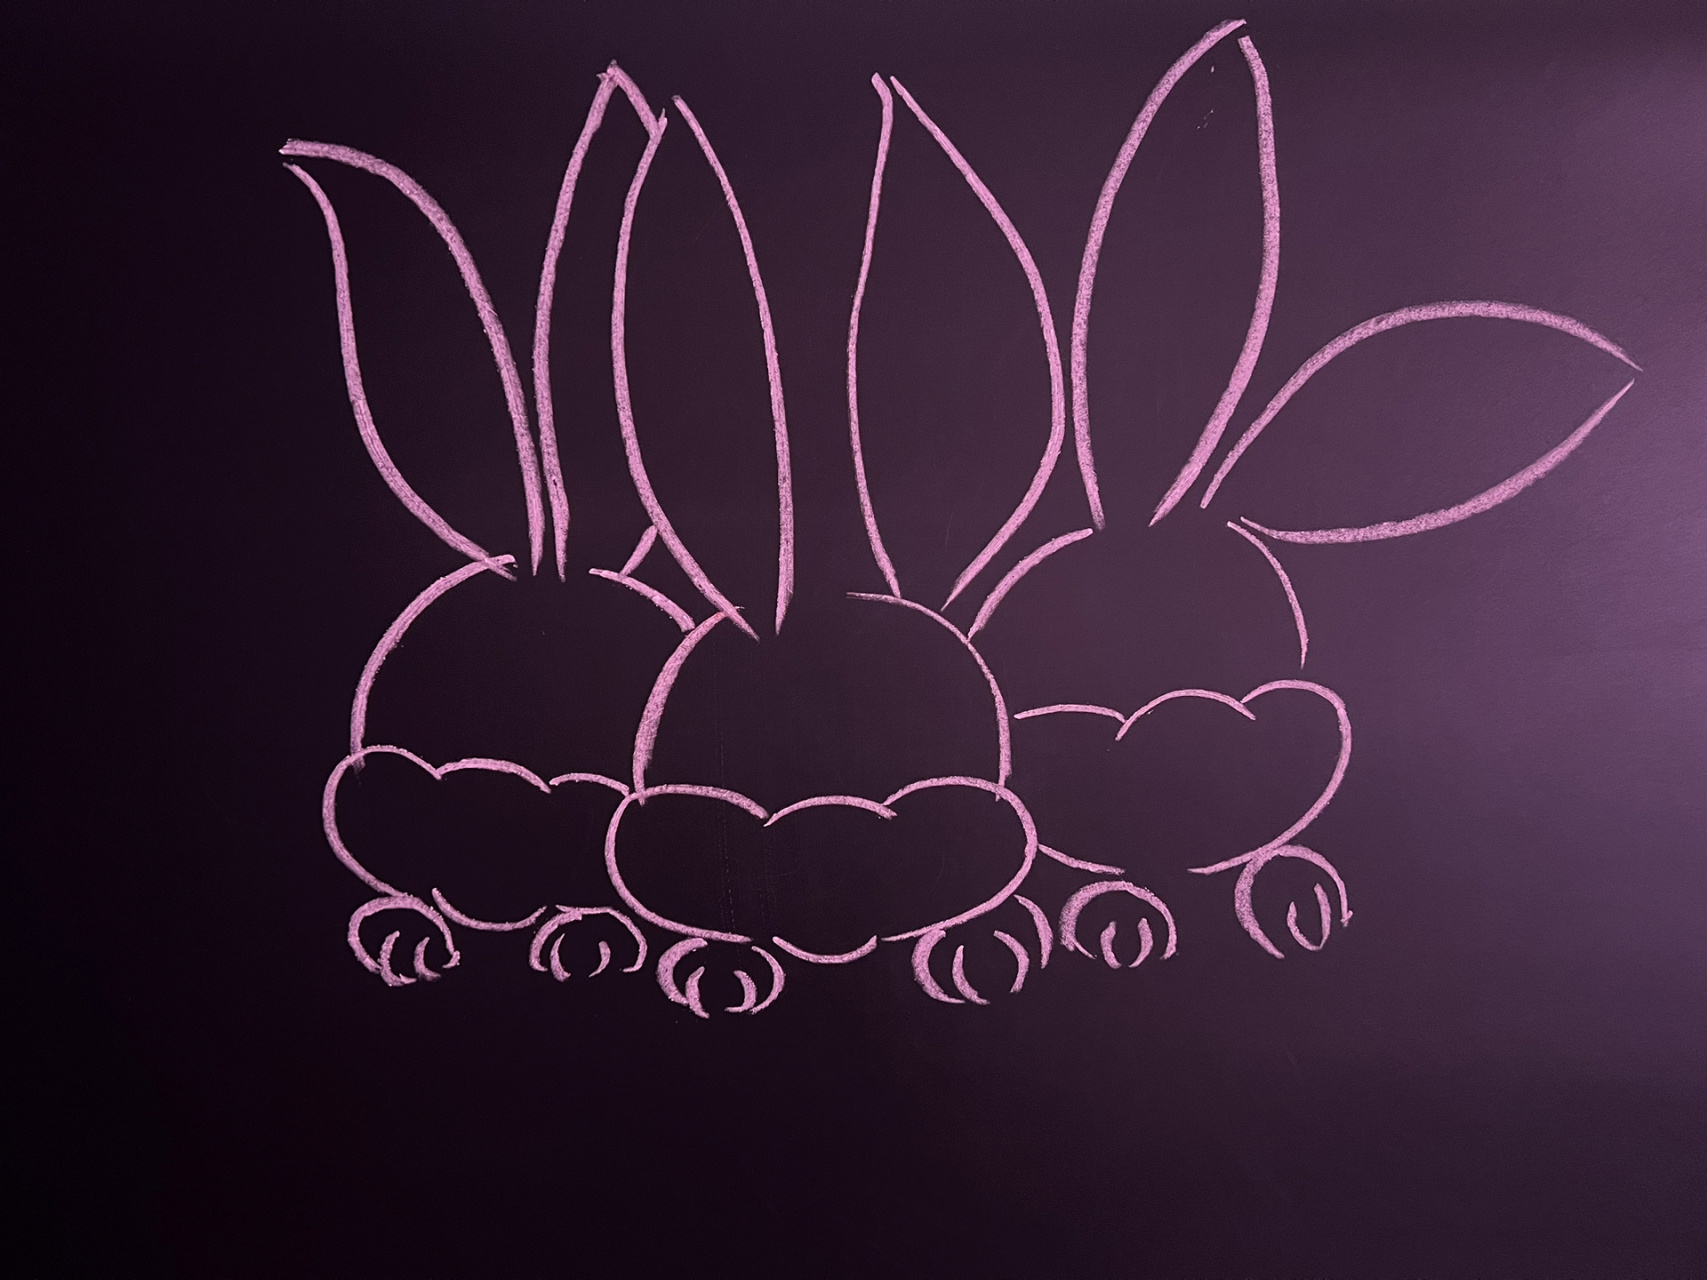 黑板报一黑板报粉笔画～兔子   黑板报插画粉笔画福袋91